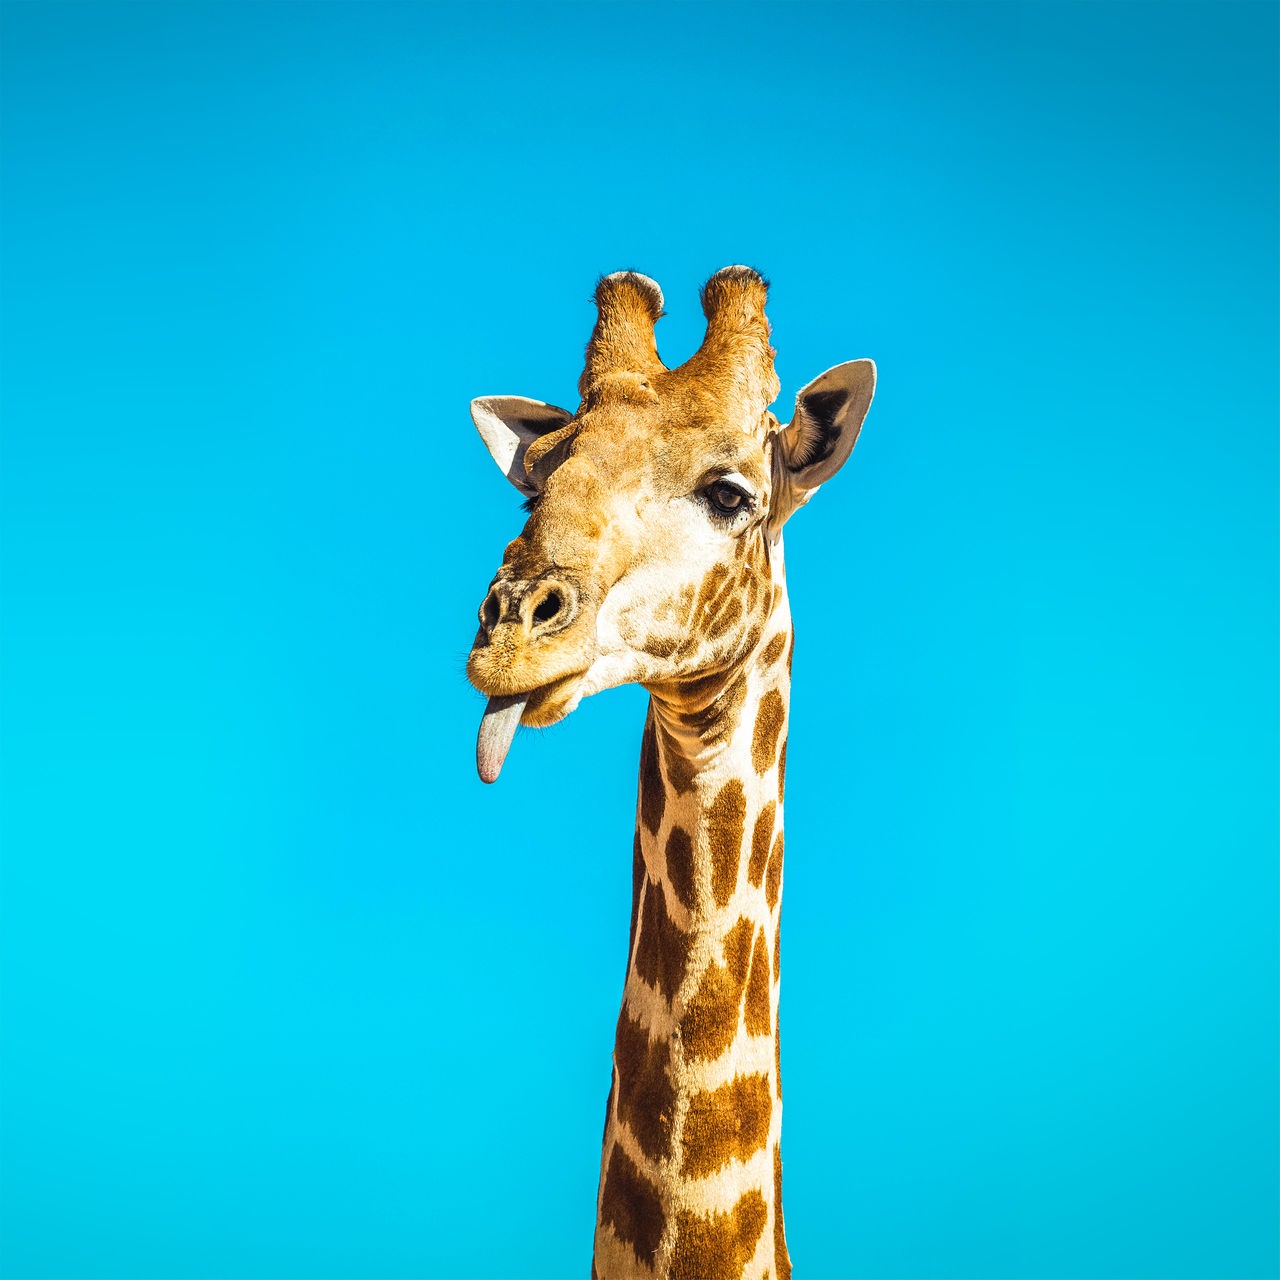 Giraffe mit ausgestreckter Zunge